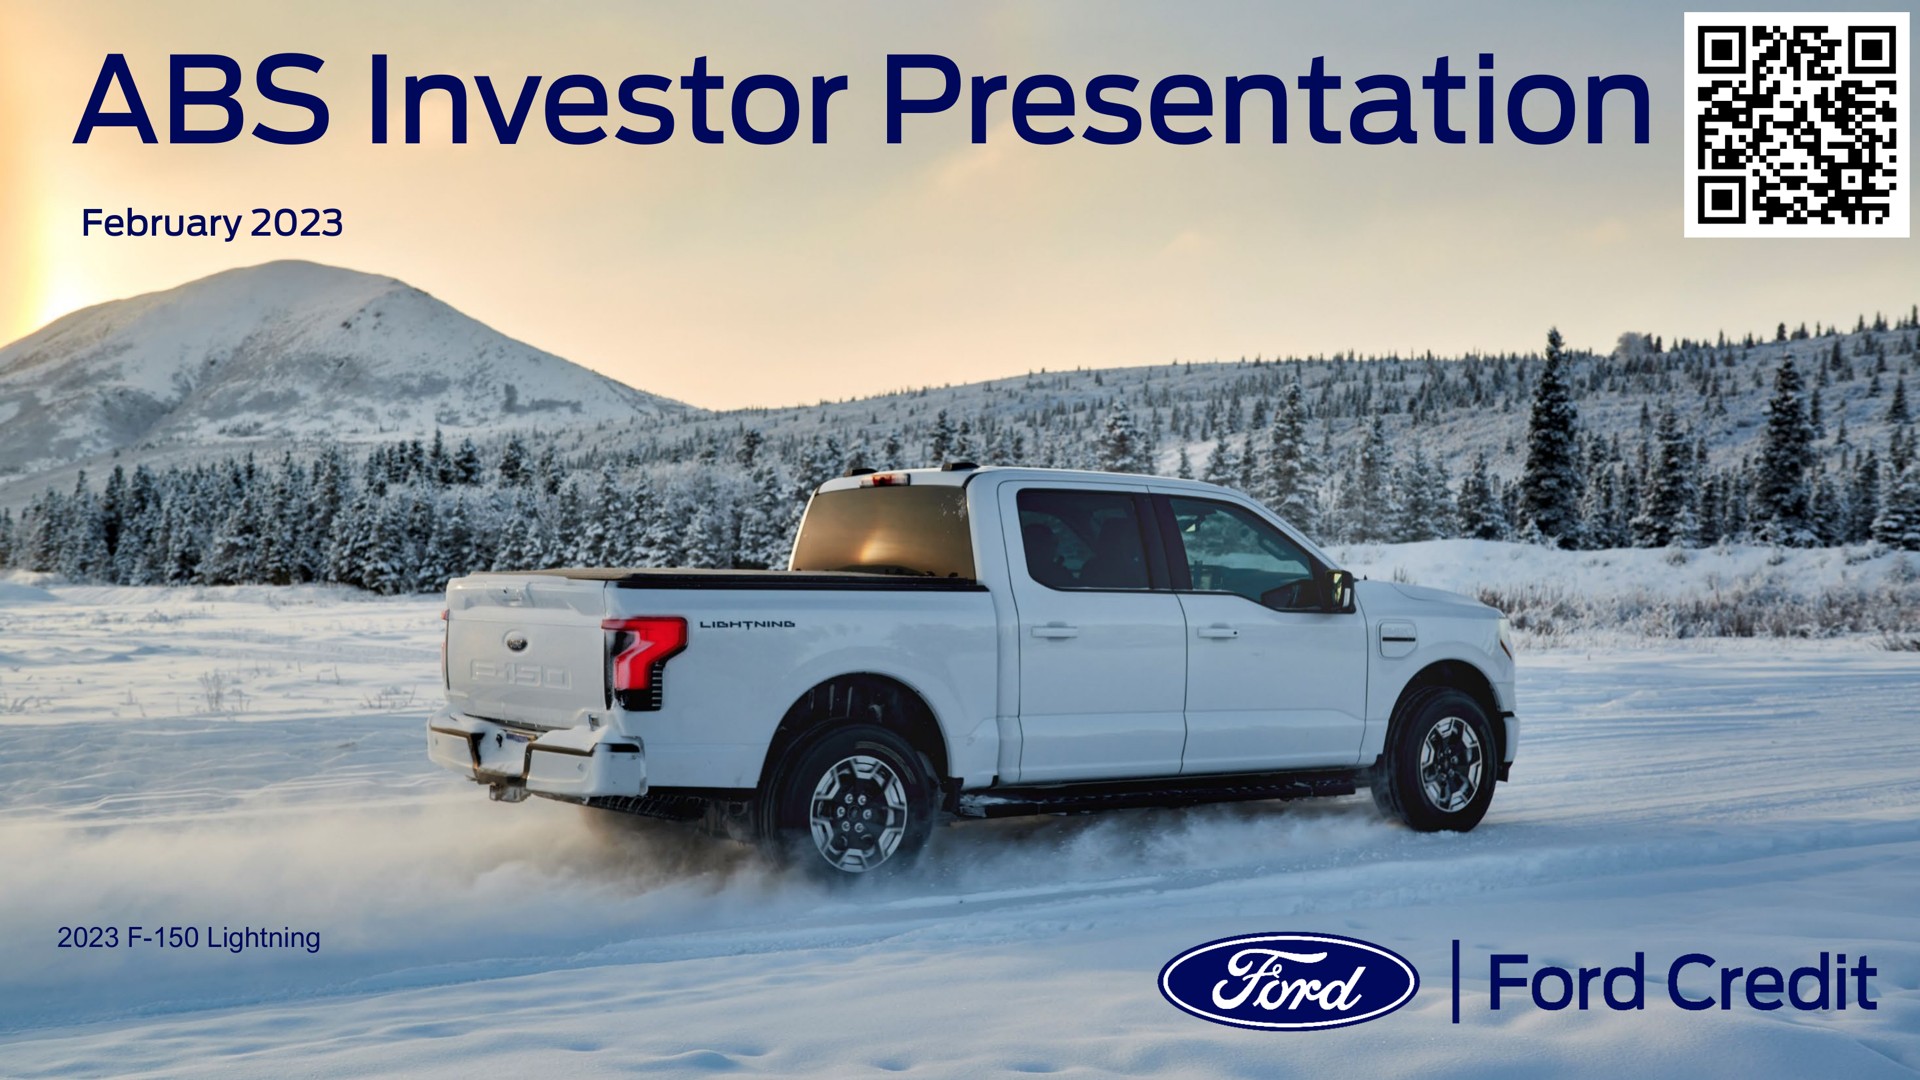 investor presentation ford credit | Ford Credit